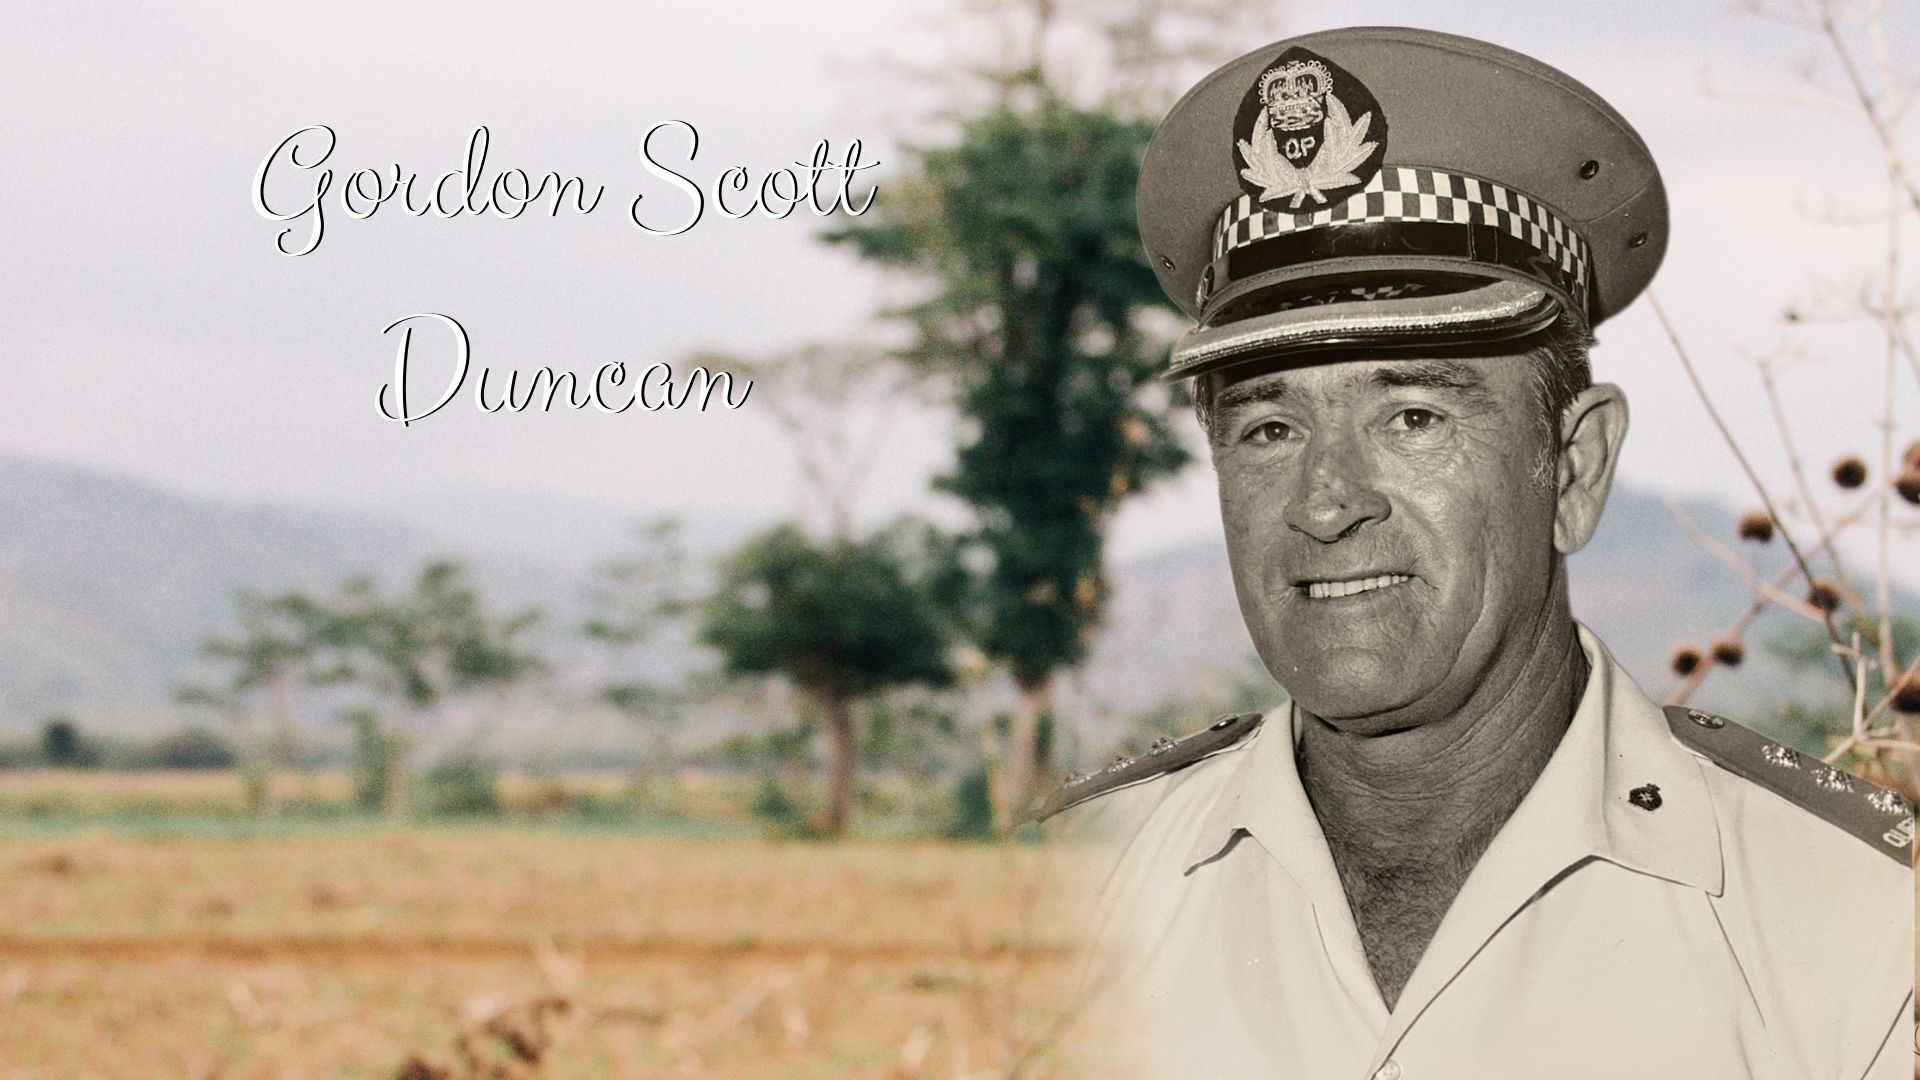 Gordon Scott Duncan